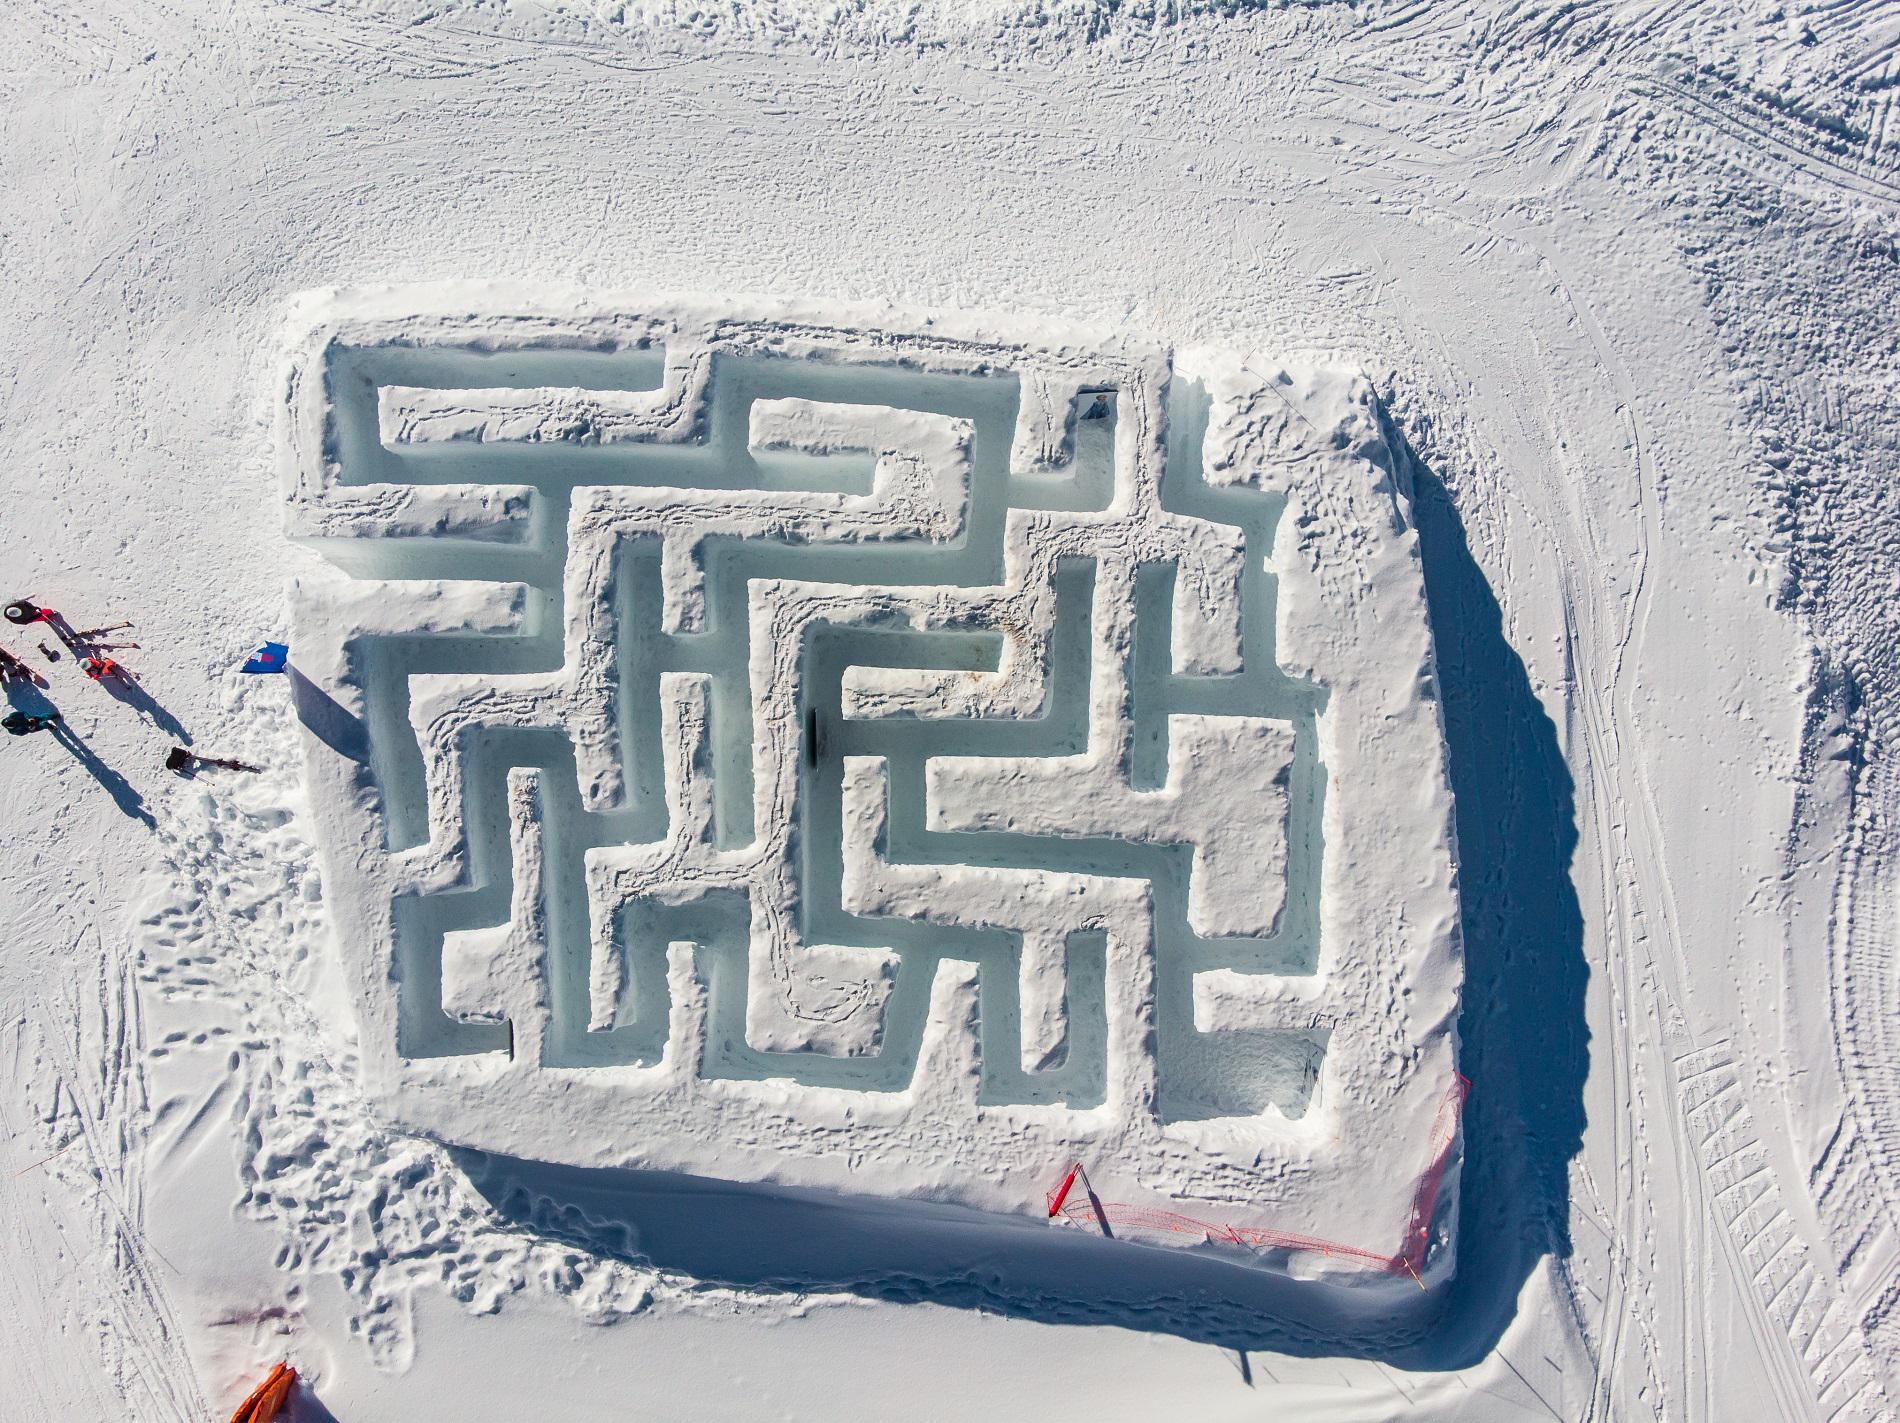 Aux Menuires, Le labyrinthe des neiges pour amuser les enfants à se perdre.